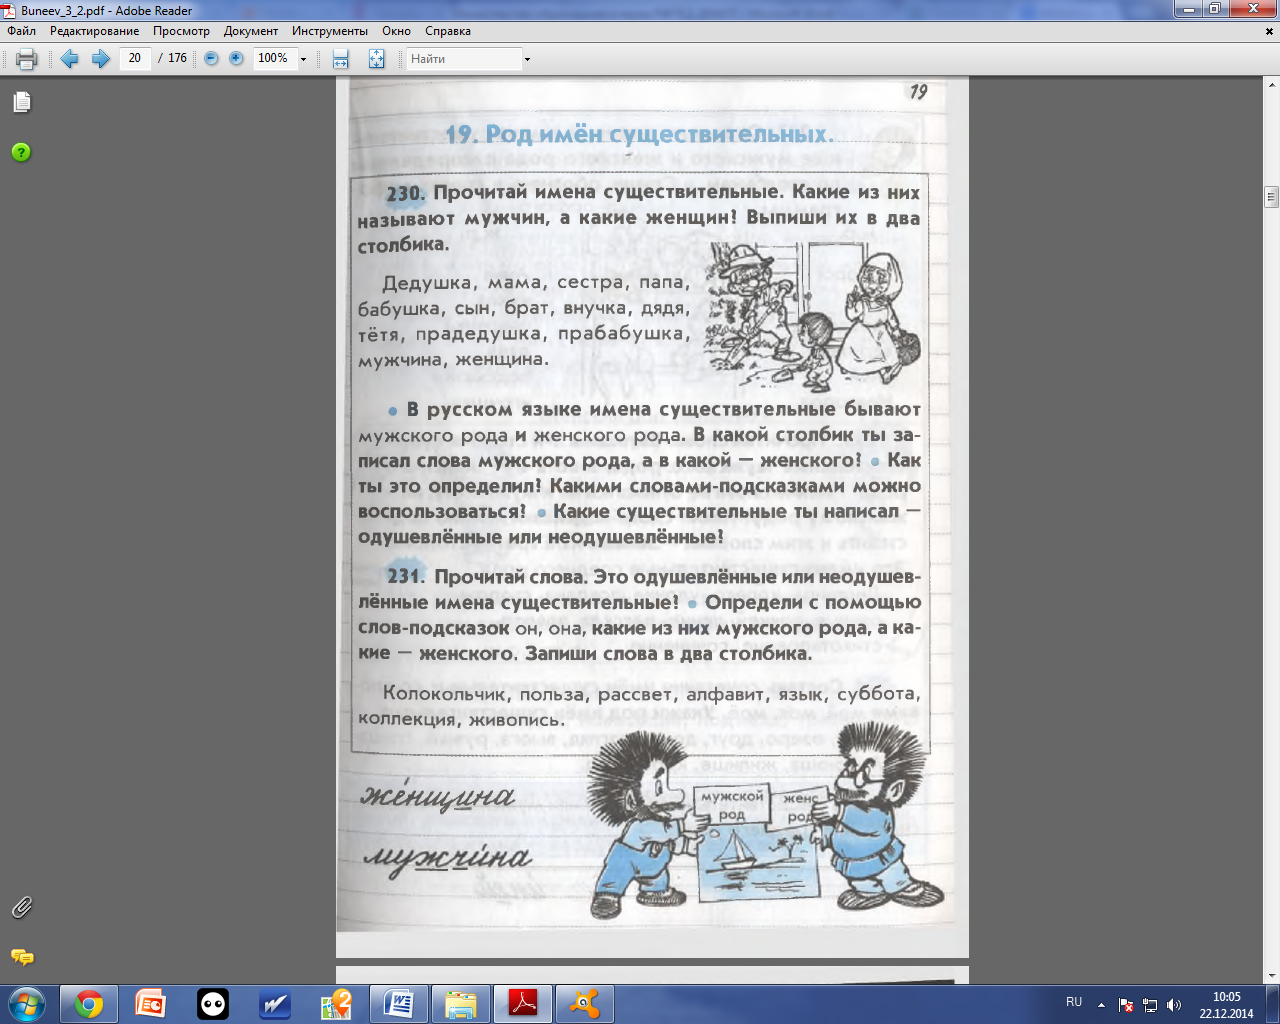 Конспект урока по русскому языку для 3 класса по программе Бунеева. Род имени существительного.